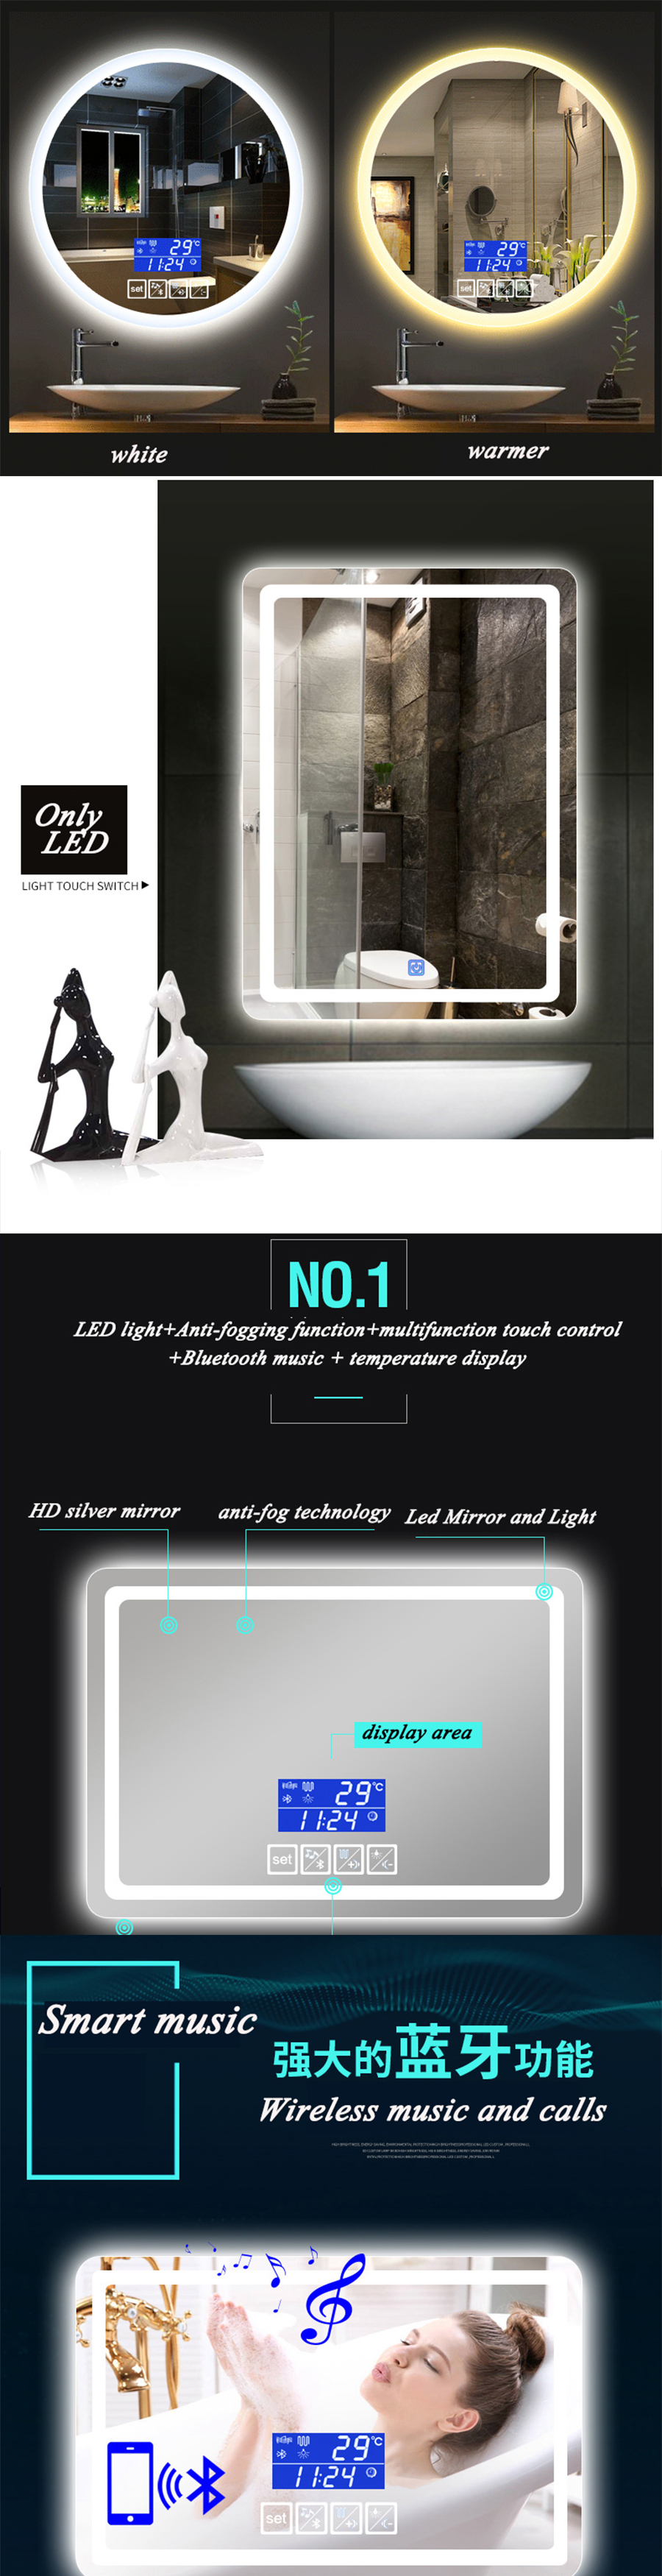 Hotel Bathroom Wall-Hung LED Mirror in 5mm HD Bg-006